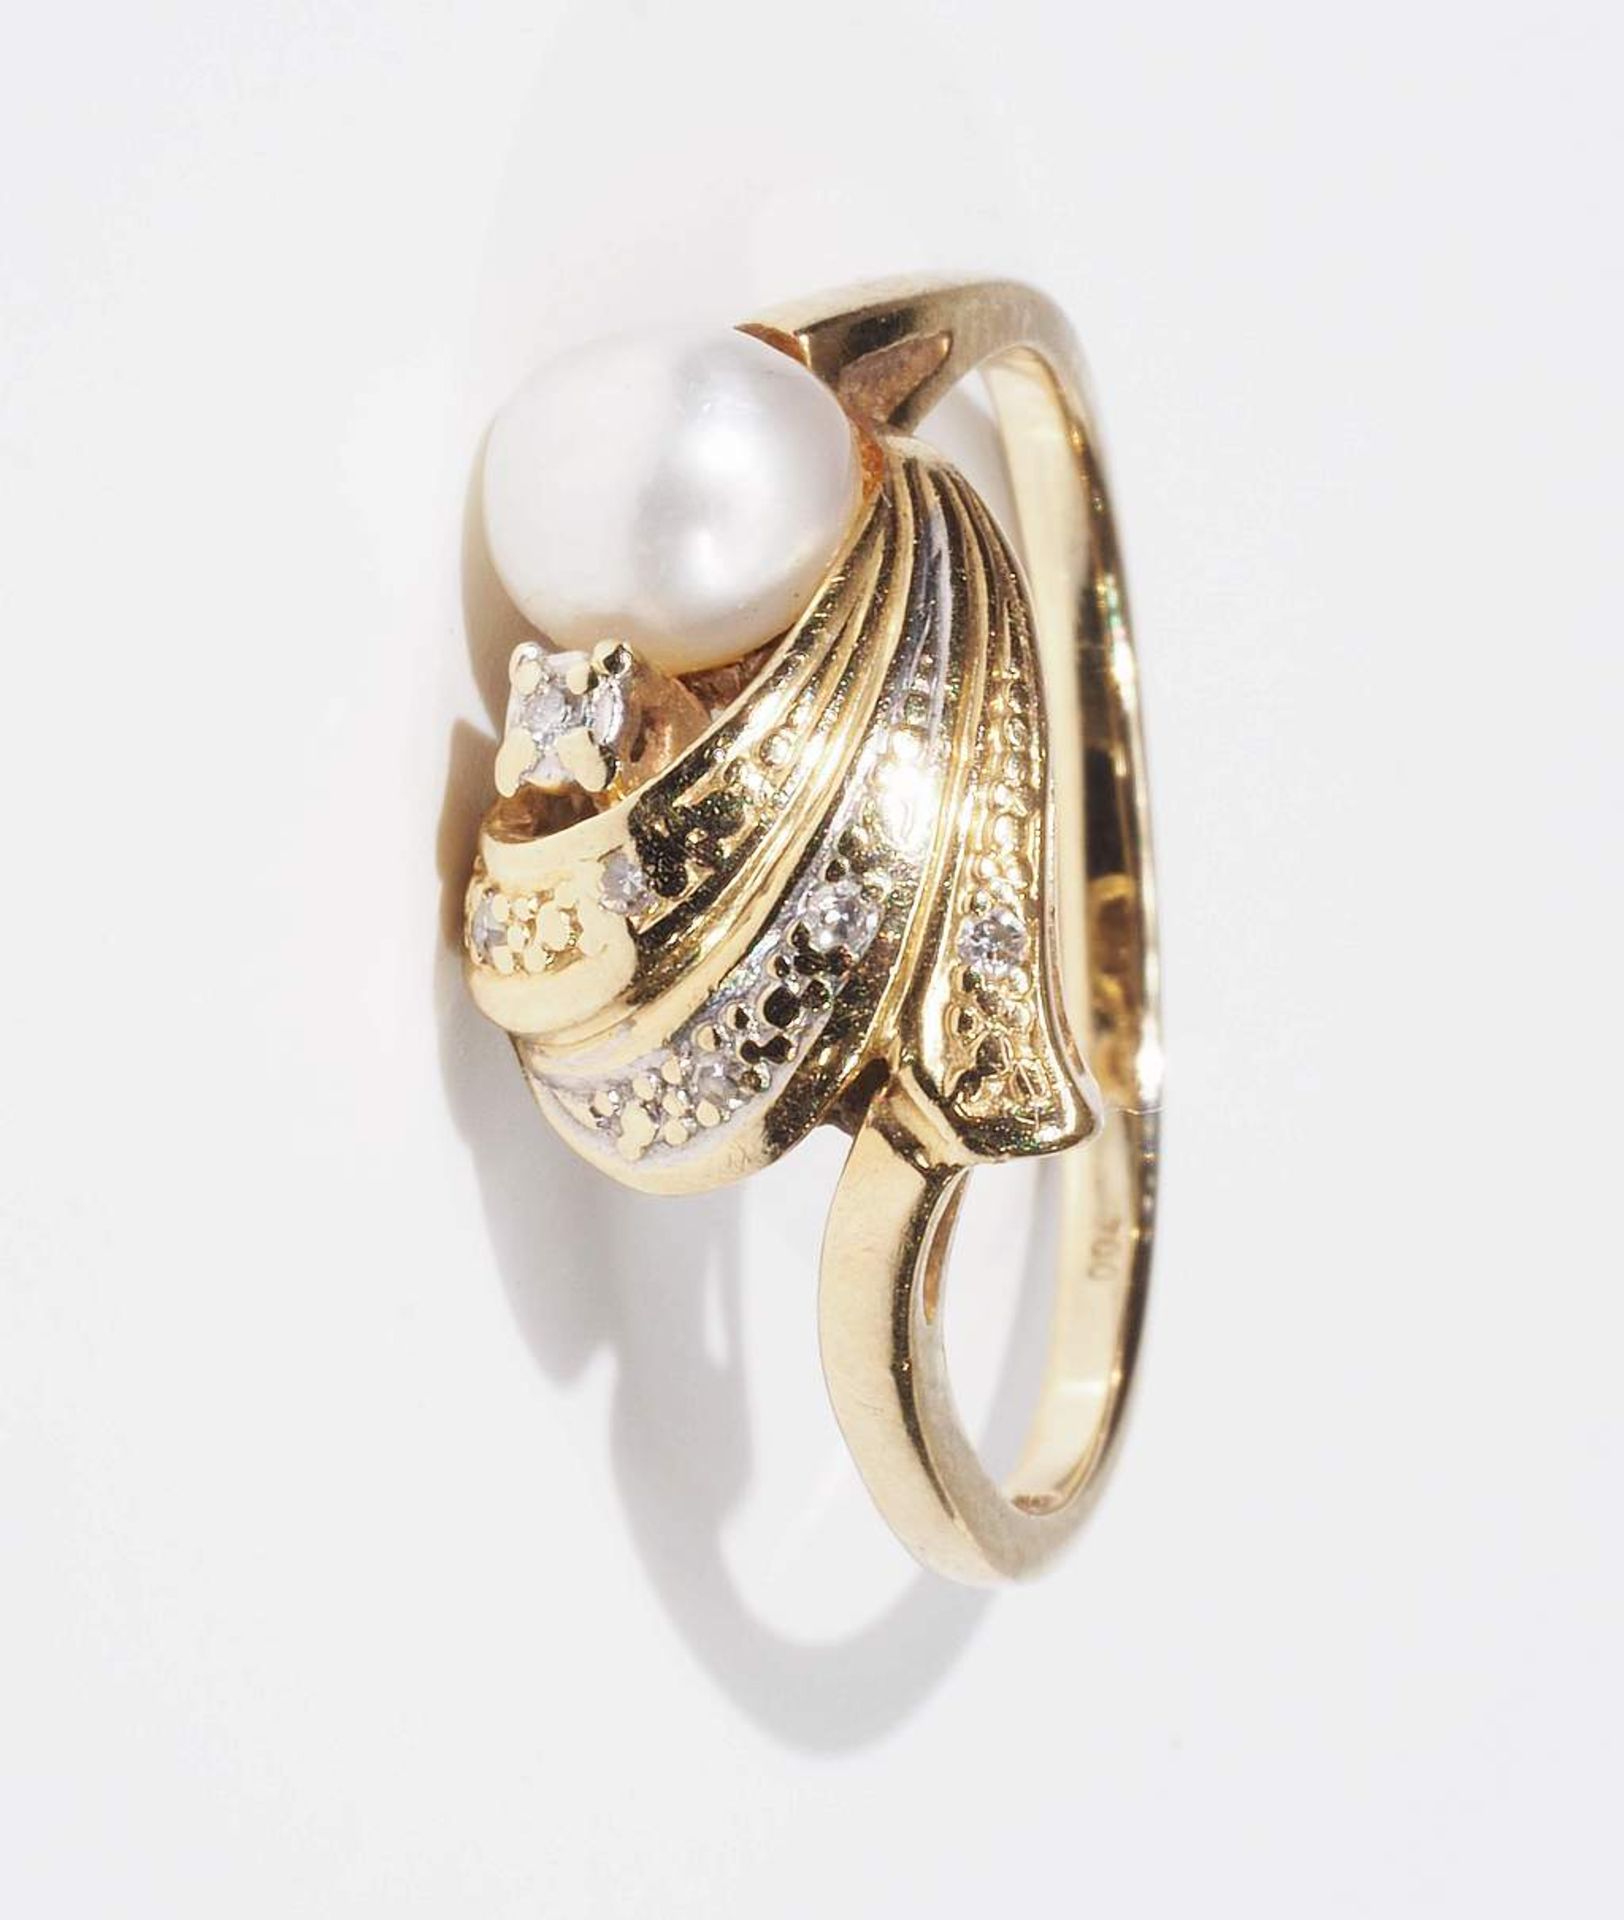 Damenring mit Diamanten und weißer Perle. 585er Gelbgold, mit kleinen Diamanten von 0,04 ct. (in - Bild 2 aus 6